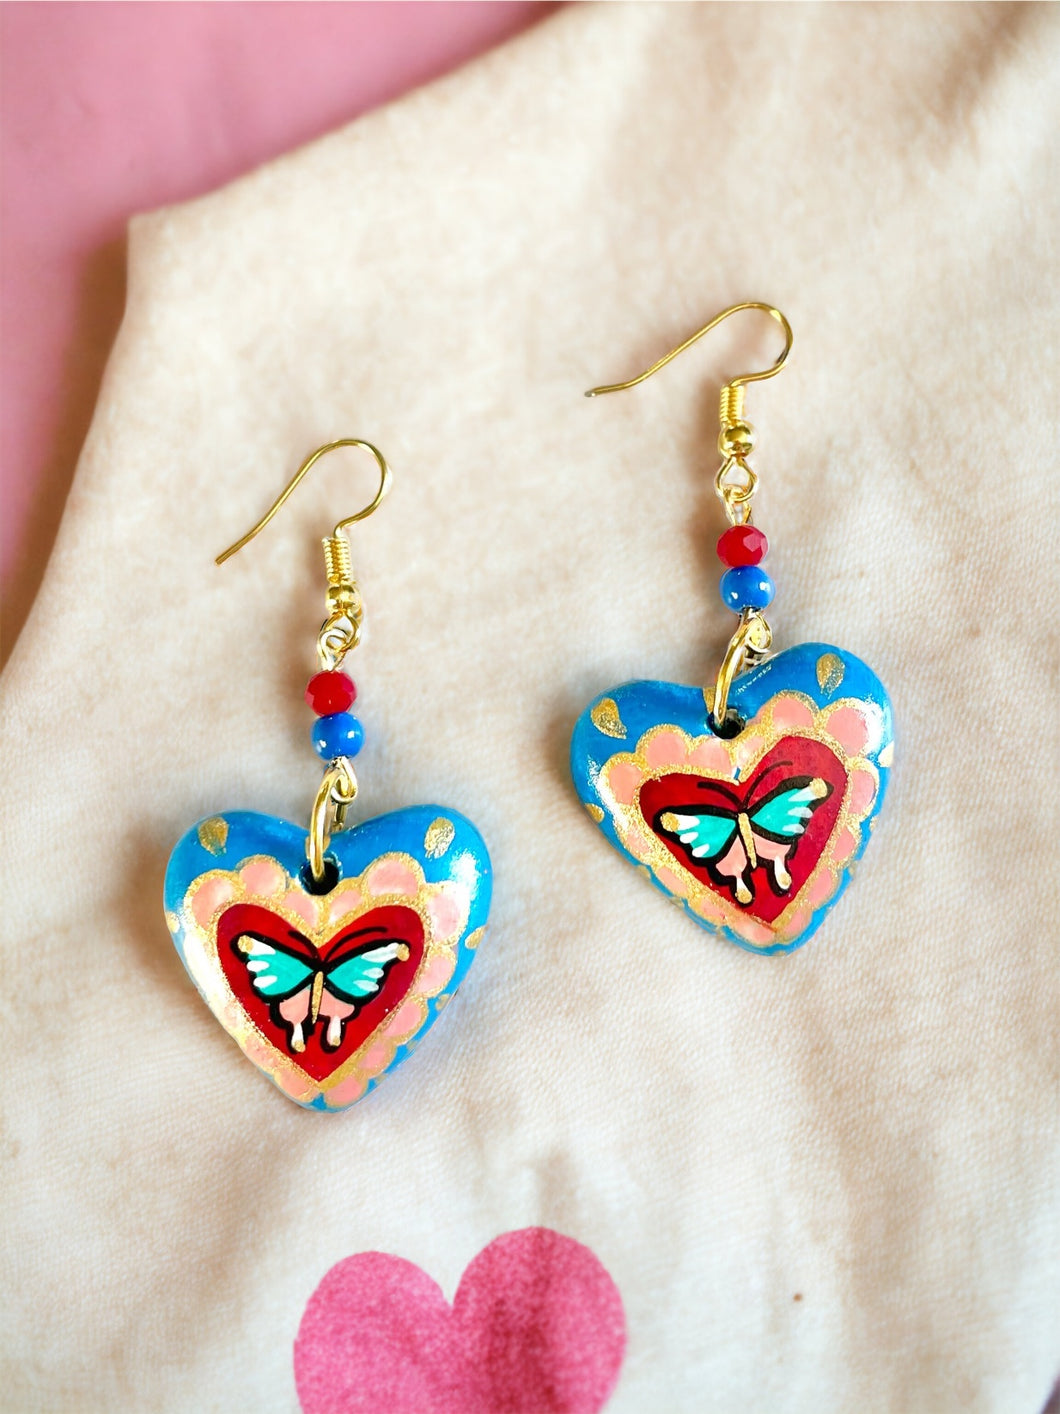 Mariposas earrings